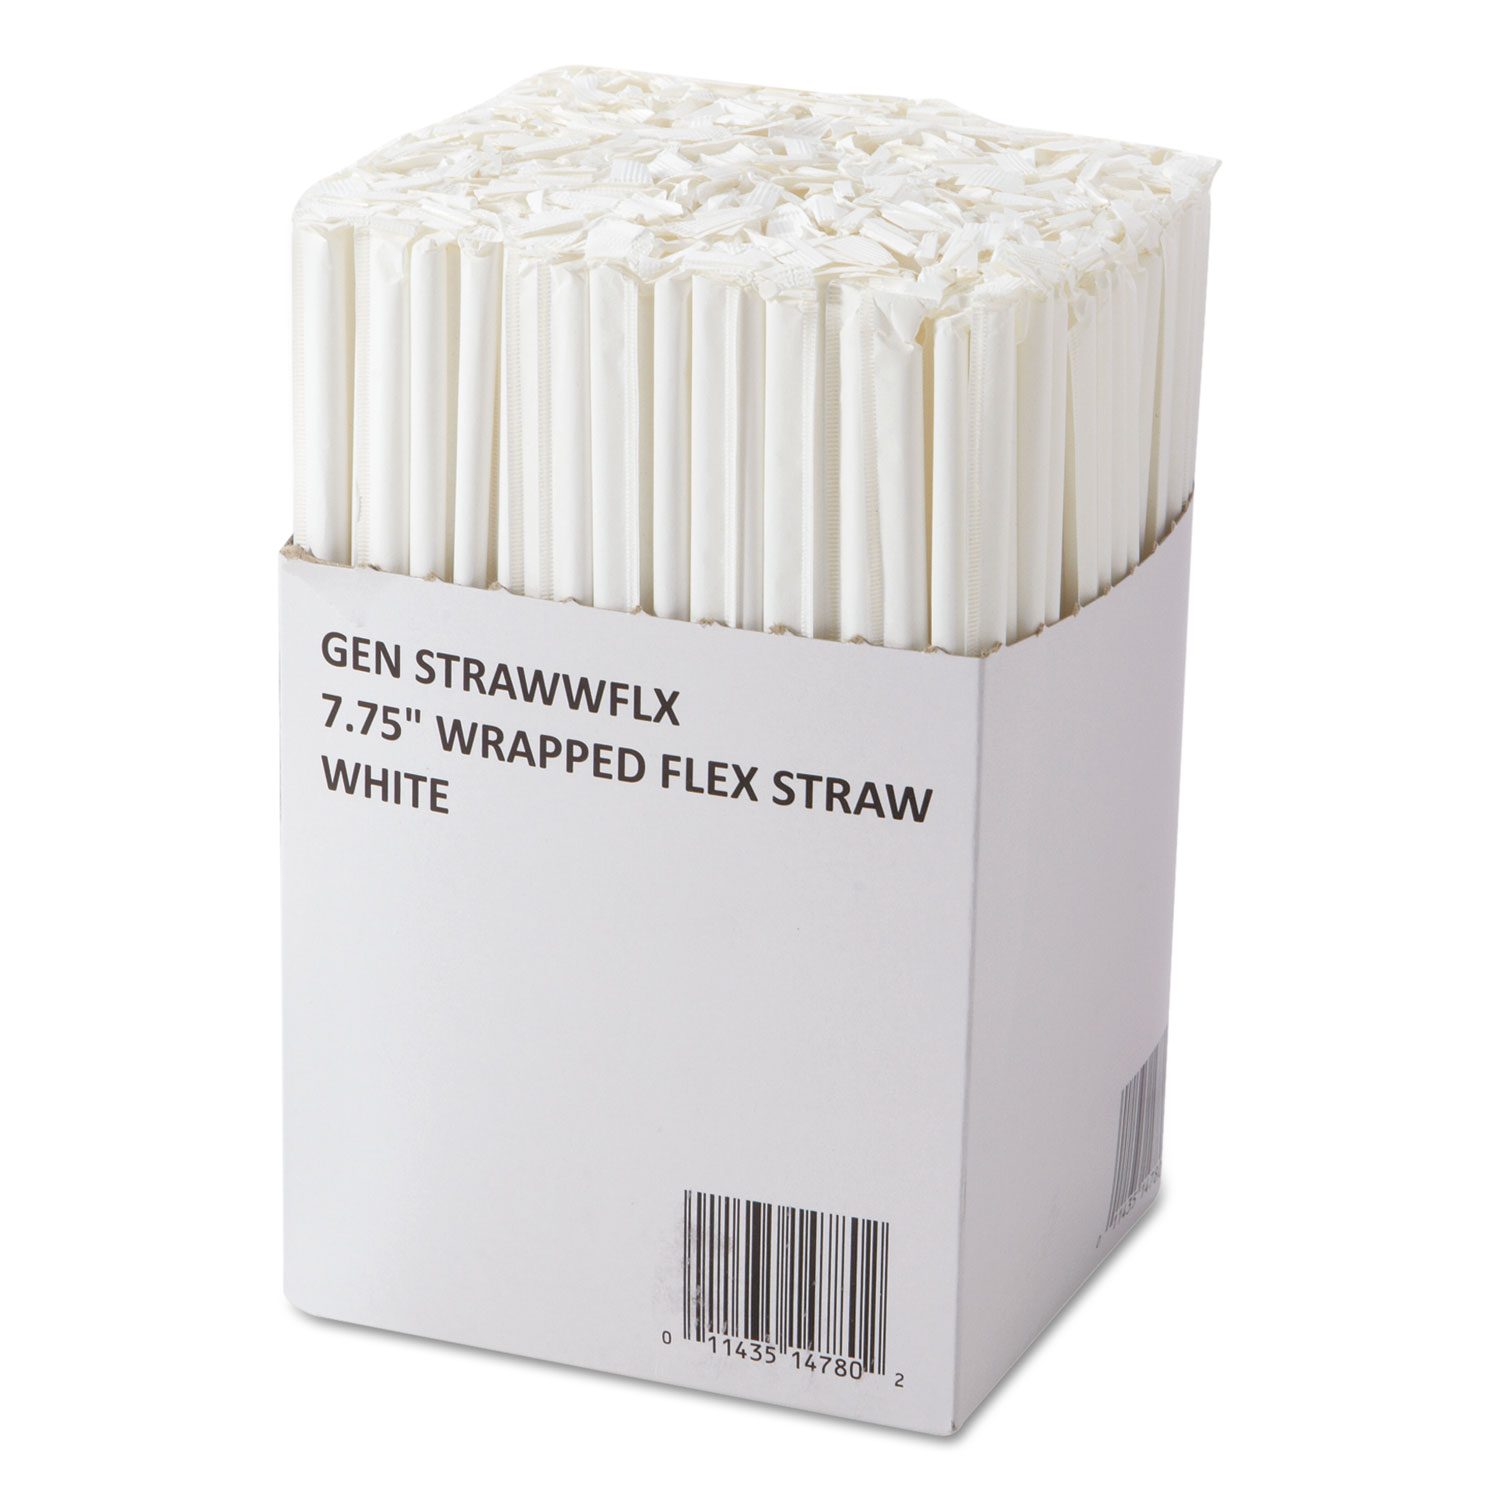 Wrapped Flex Straws, 7 3/4